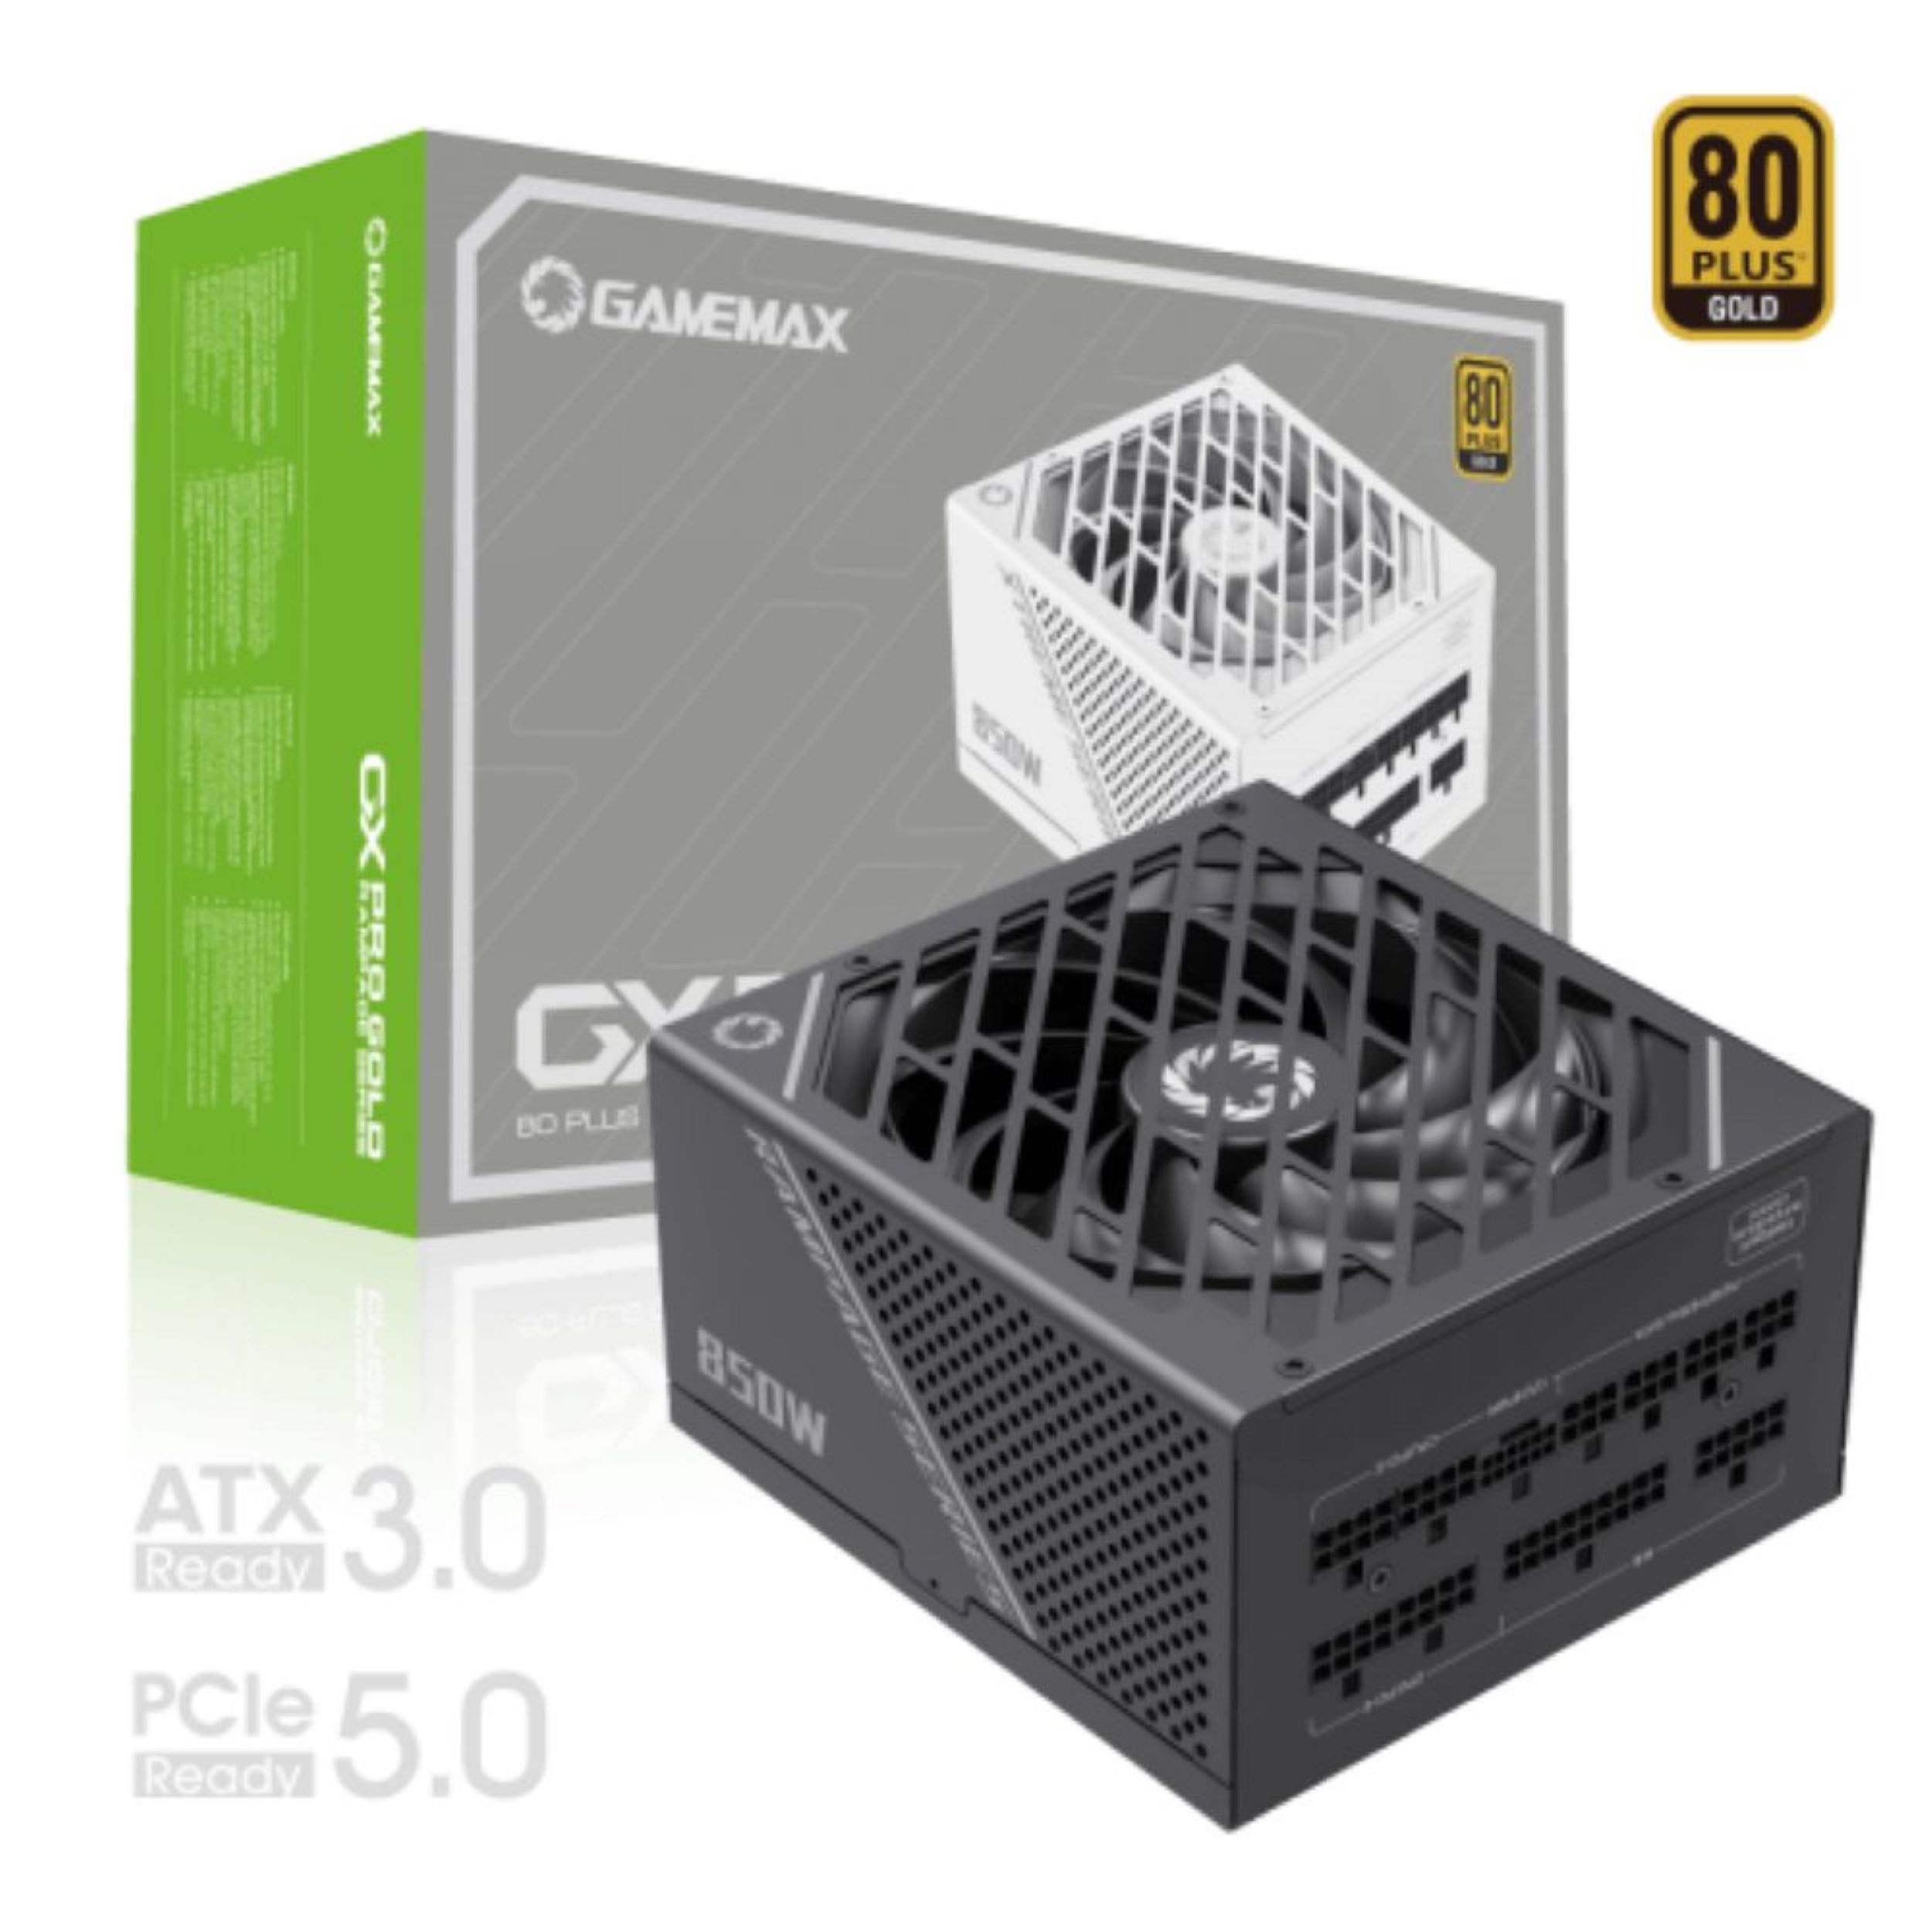 GAMEMAX GX-850 PRO BK (850W, 5.0) Watt 850 80+ ATX3.0, Gold, Netzteil PCIe